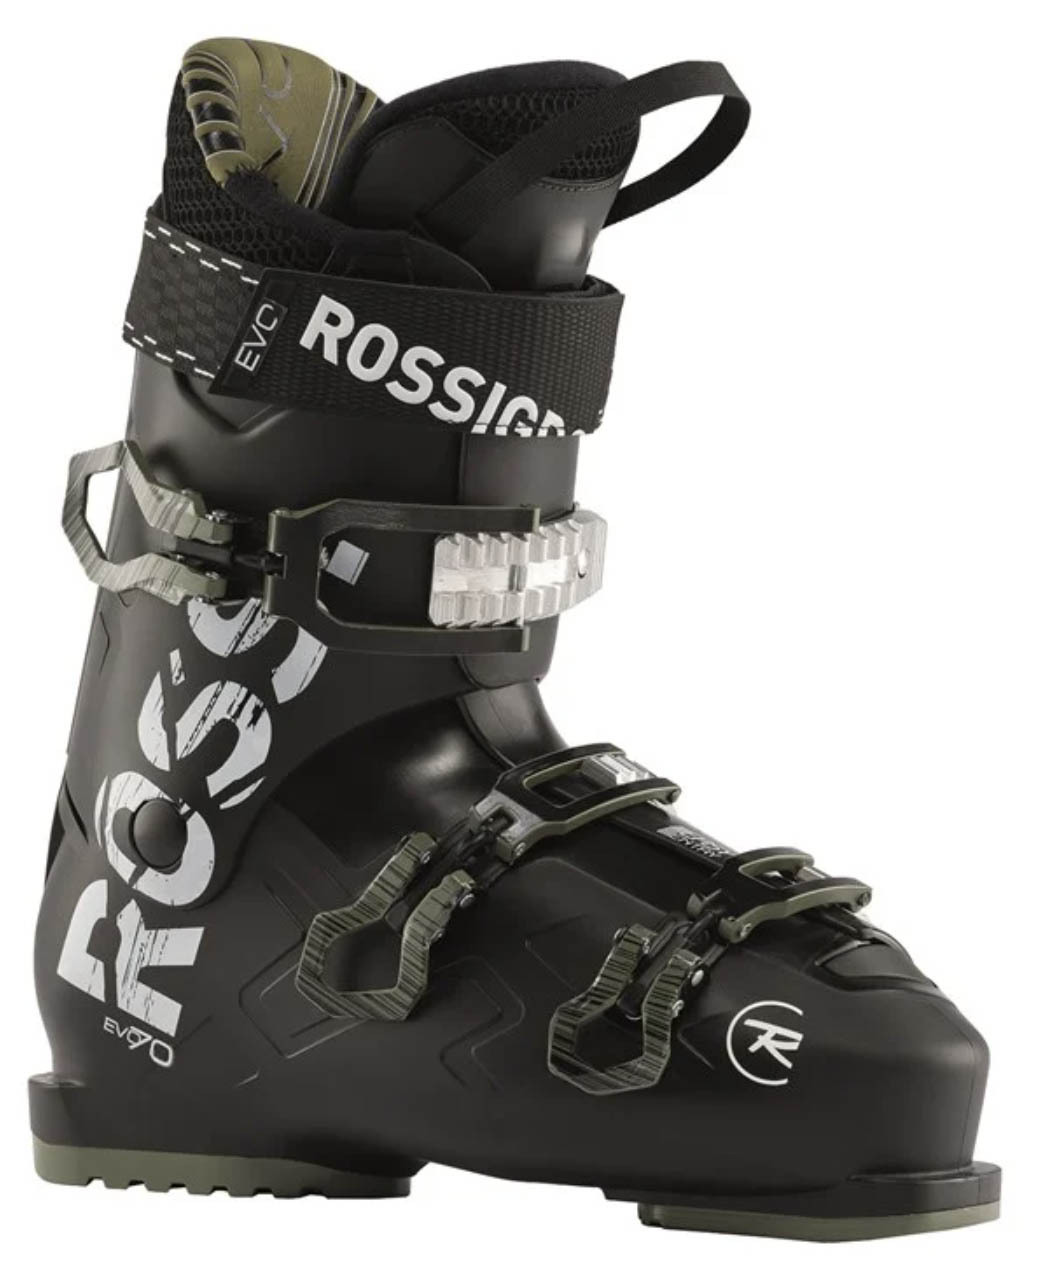 Rossignol Evo 70 ski boot